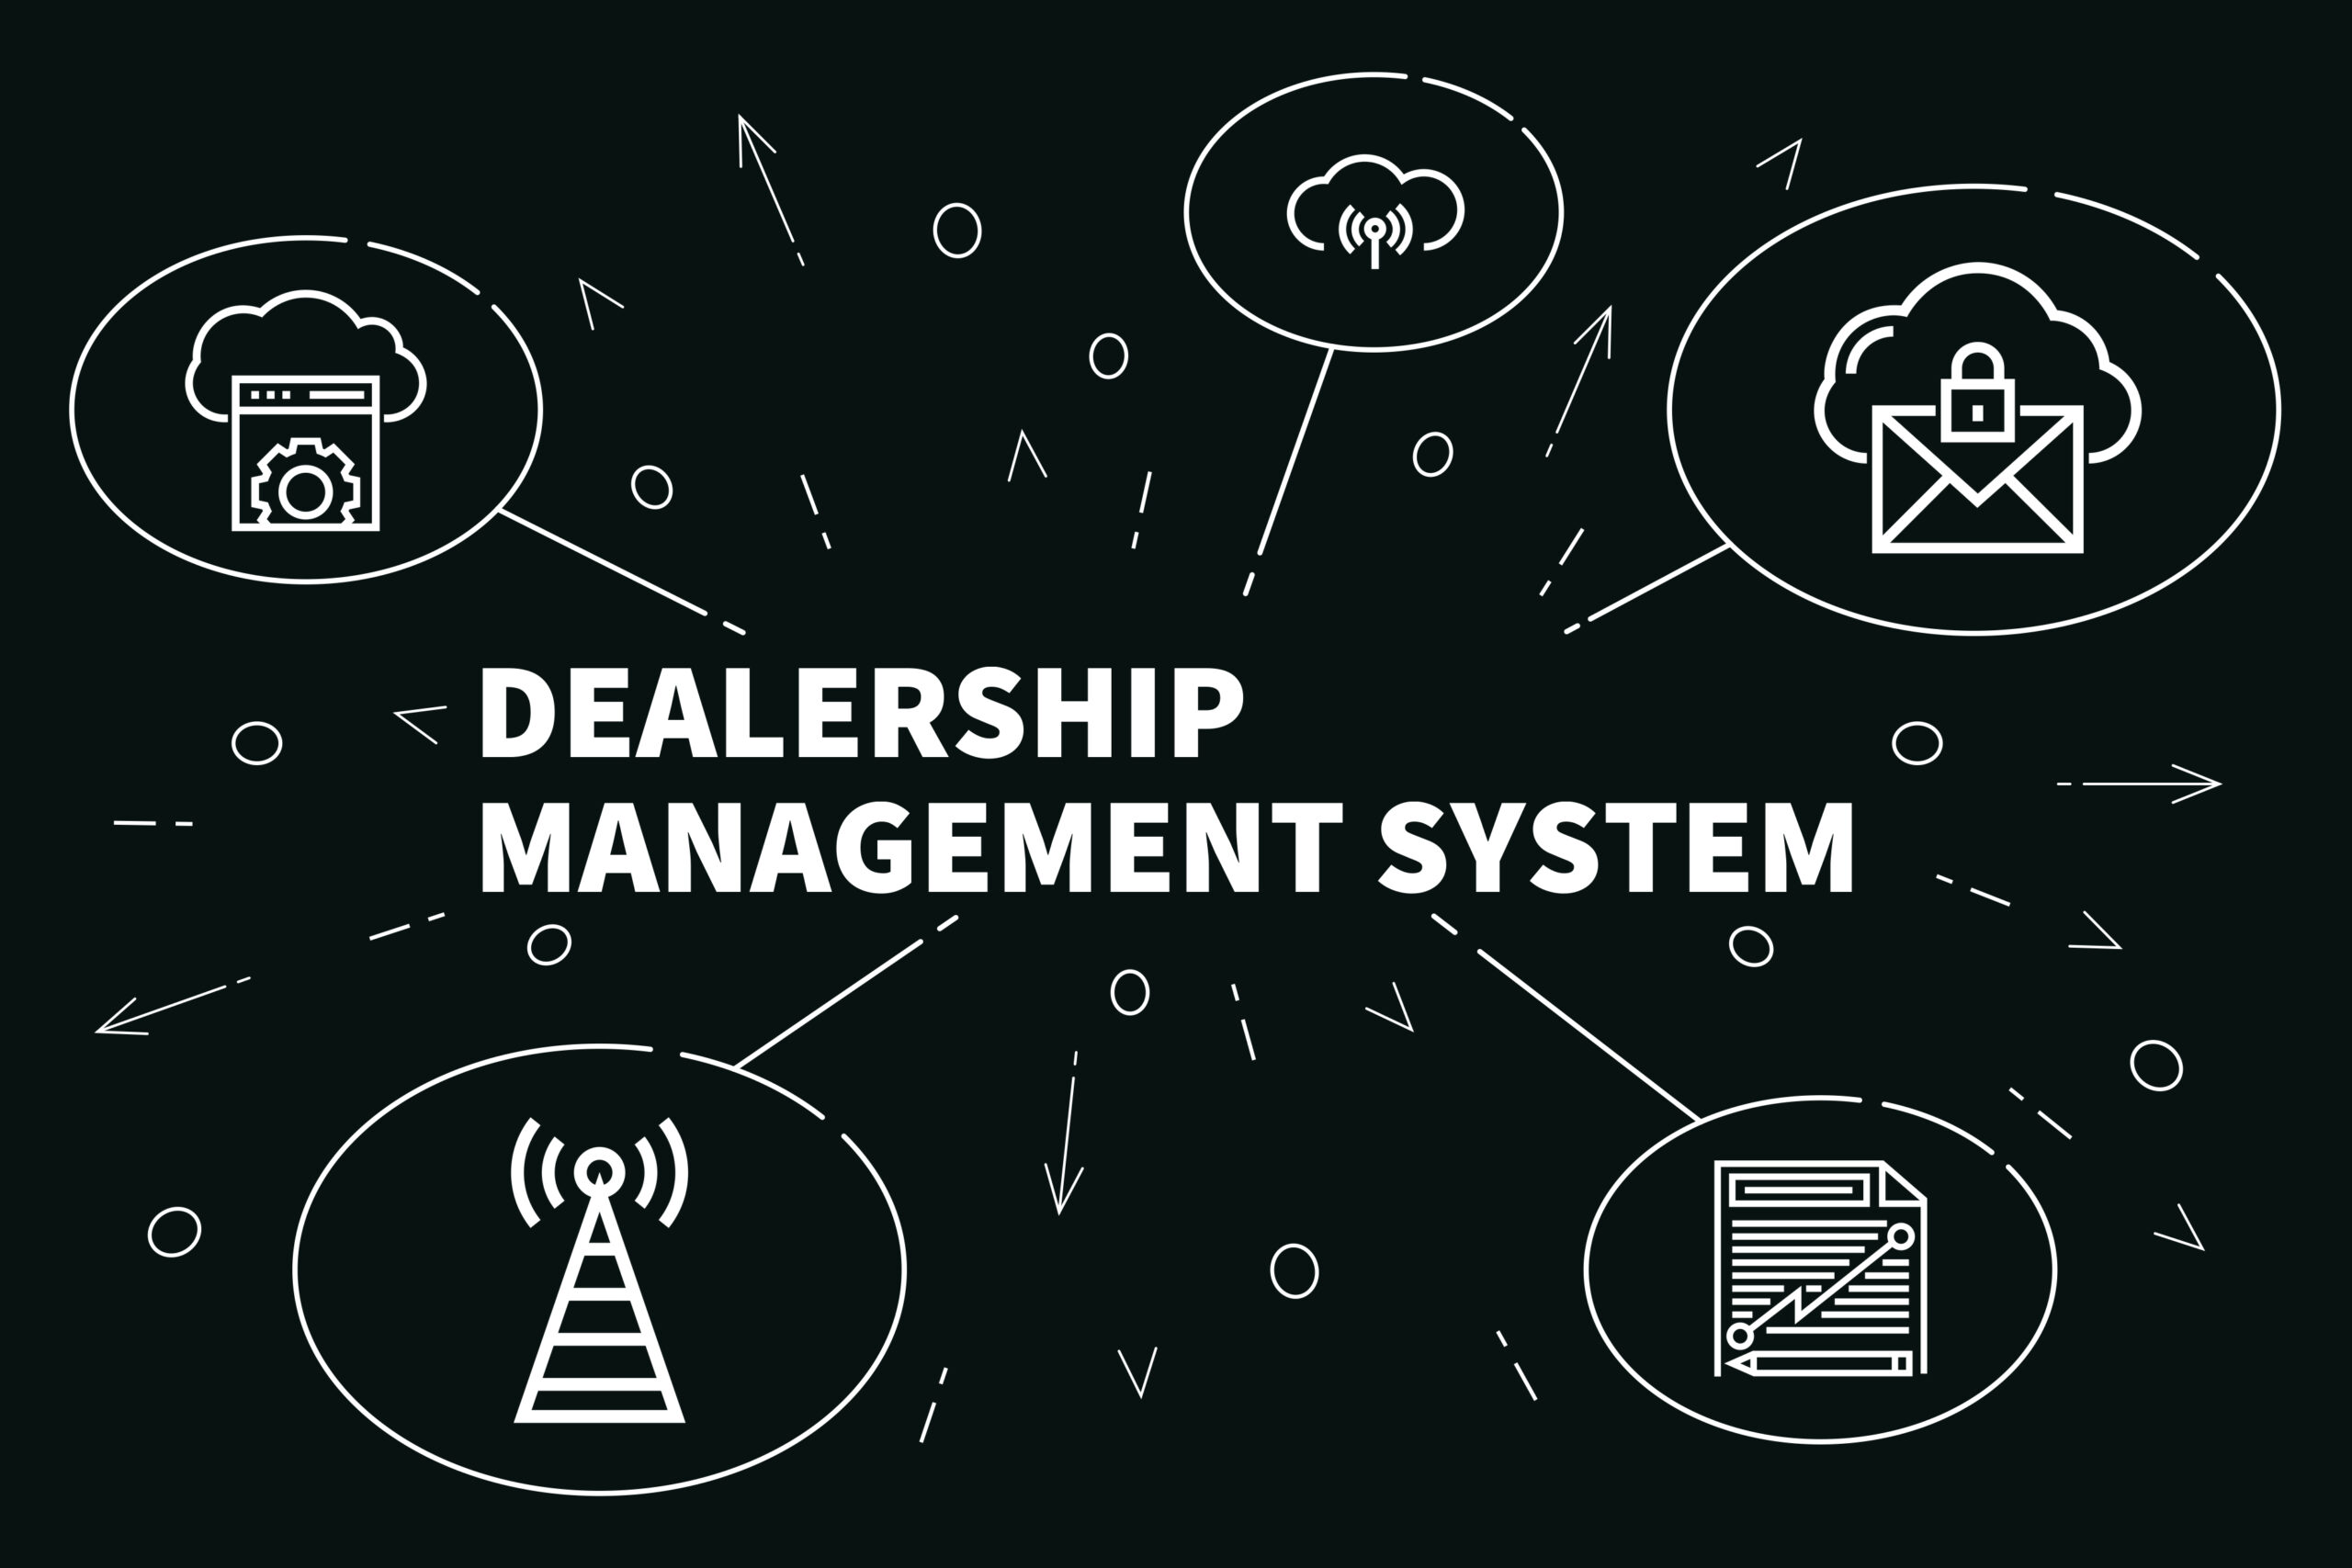 Dealership Management Software